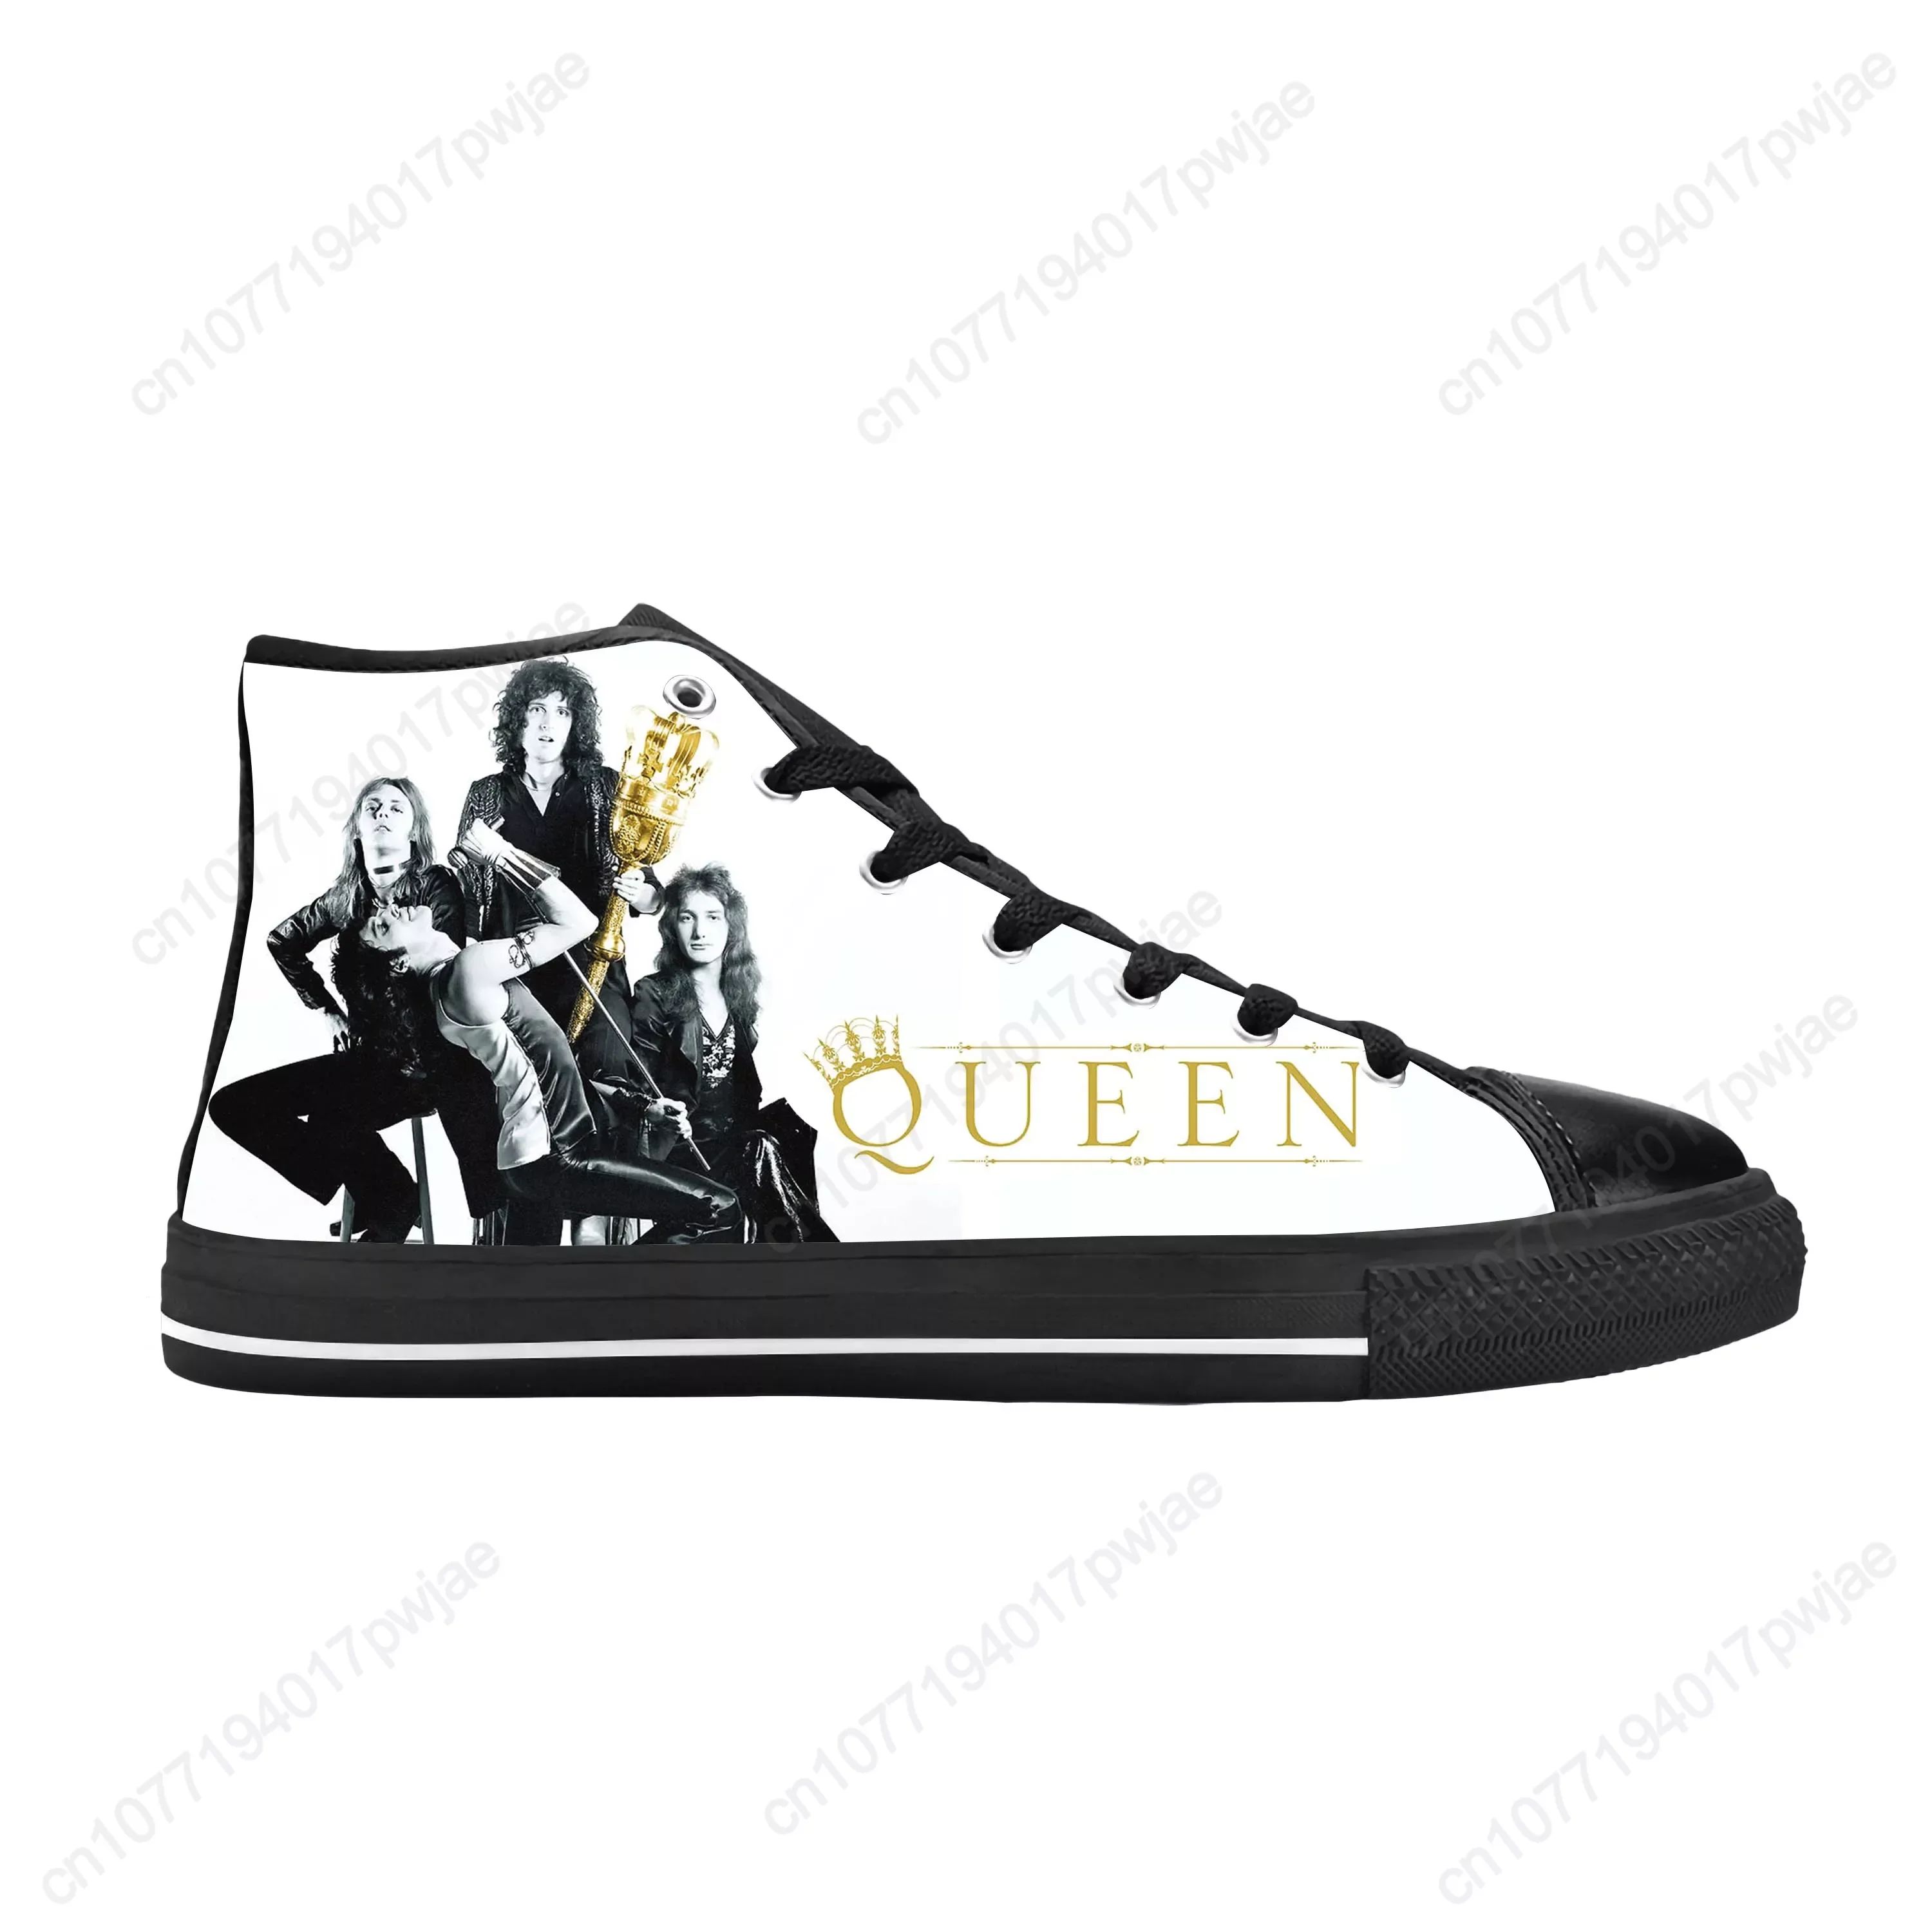 Color:Queen1Shoe Size:10.5